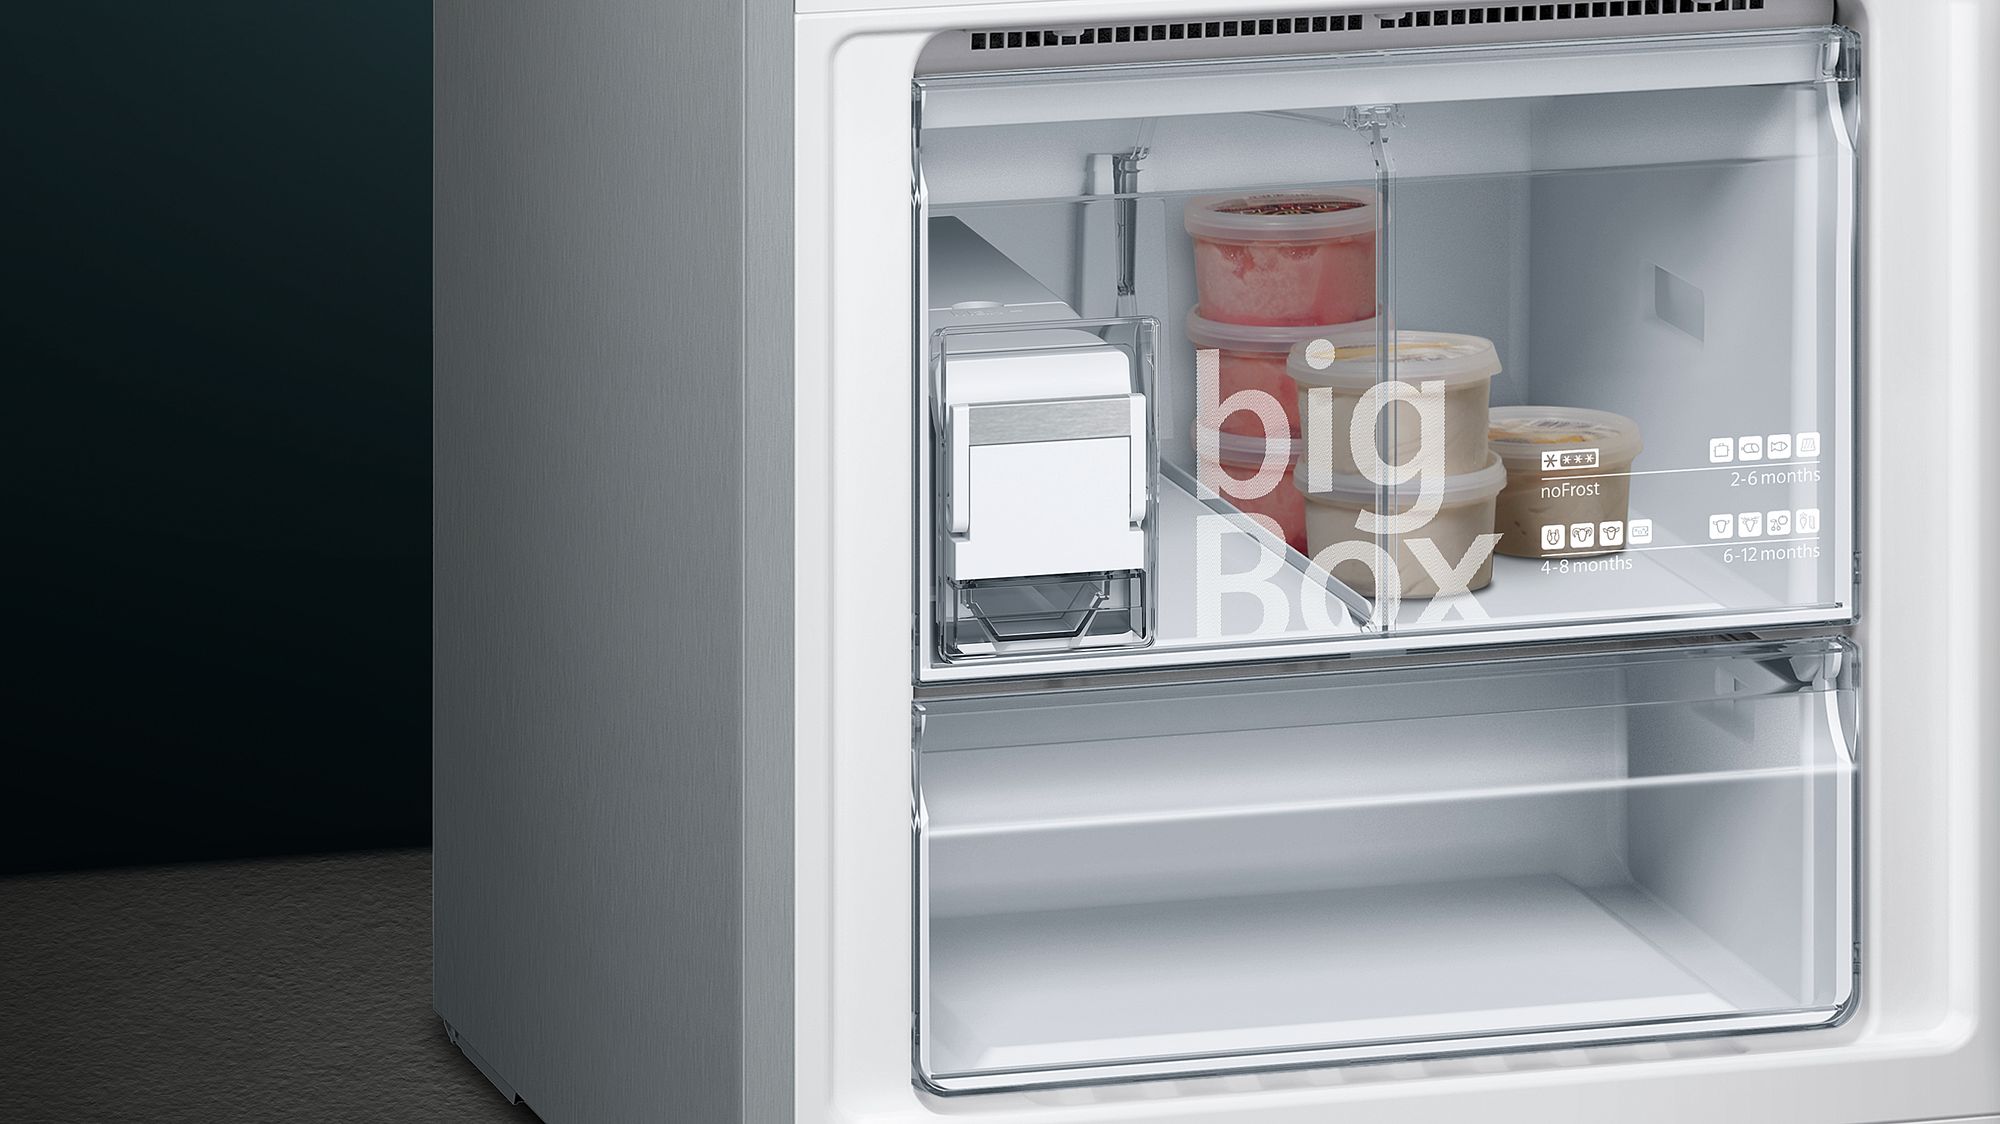 iQ700 Alttan Donduruculu Buzdolabı 70 cm, Kolay temizlenebilir Inox